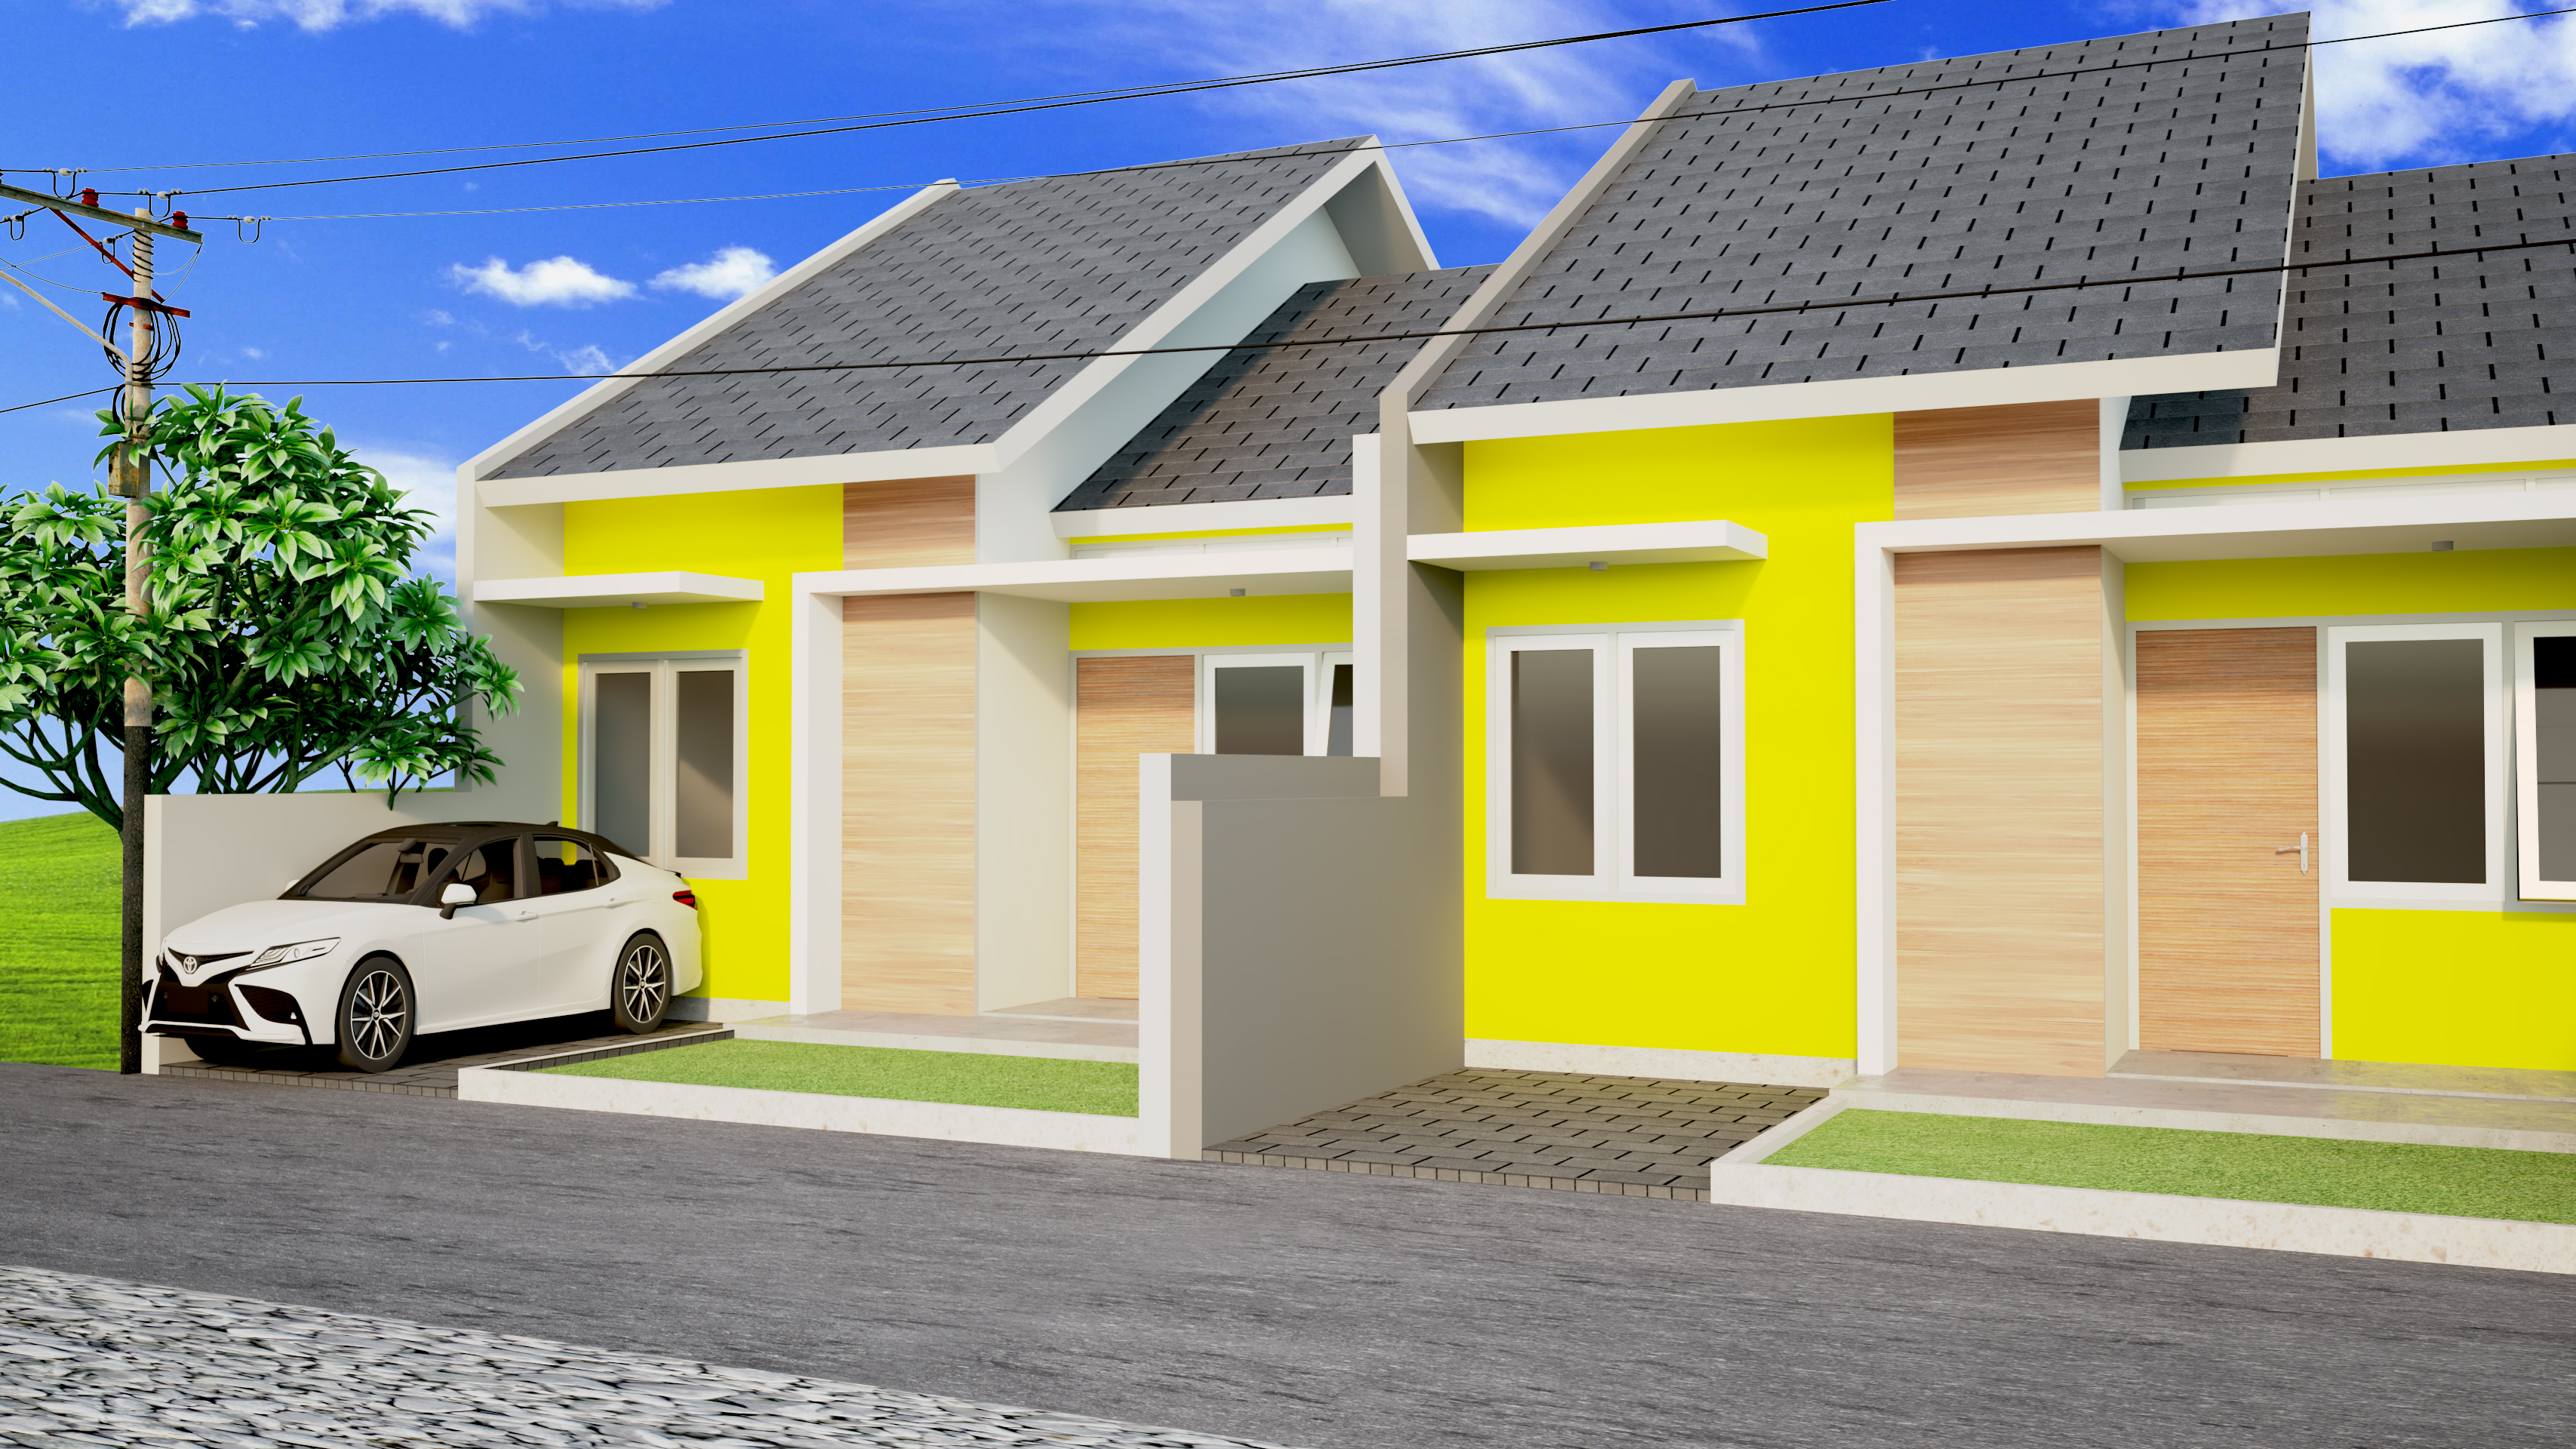 Desain Rumah Sederhana Di Kampung